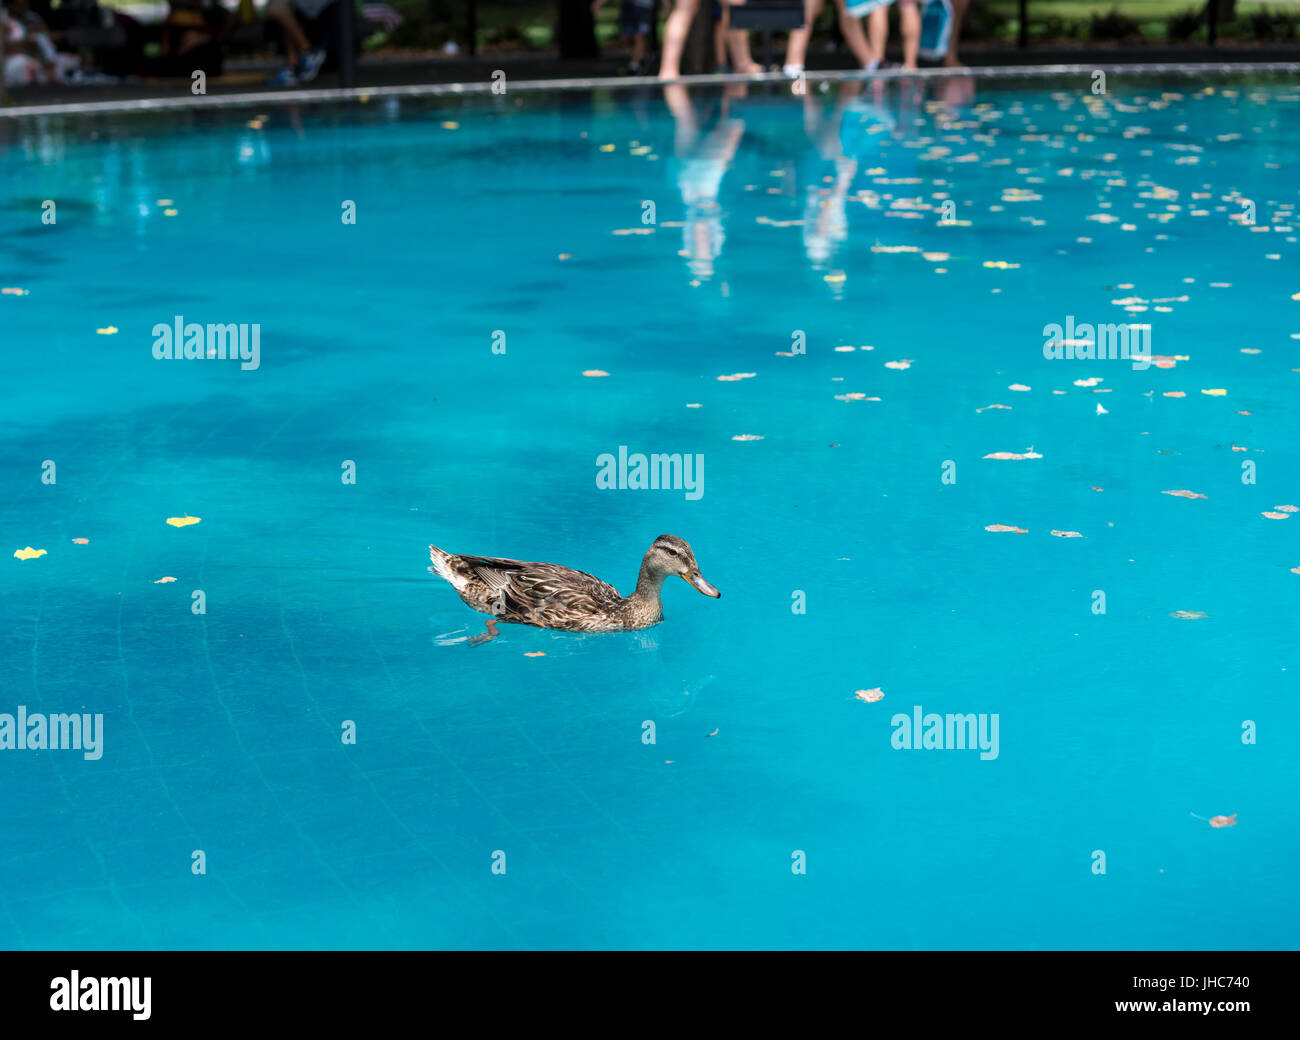 Pato nadando en la piscina reflectante en la guerra de Corea memorial Foto de stock